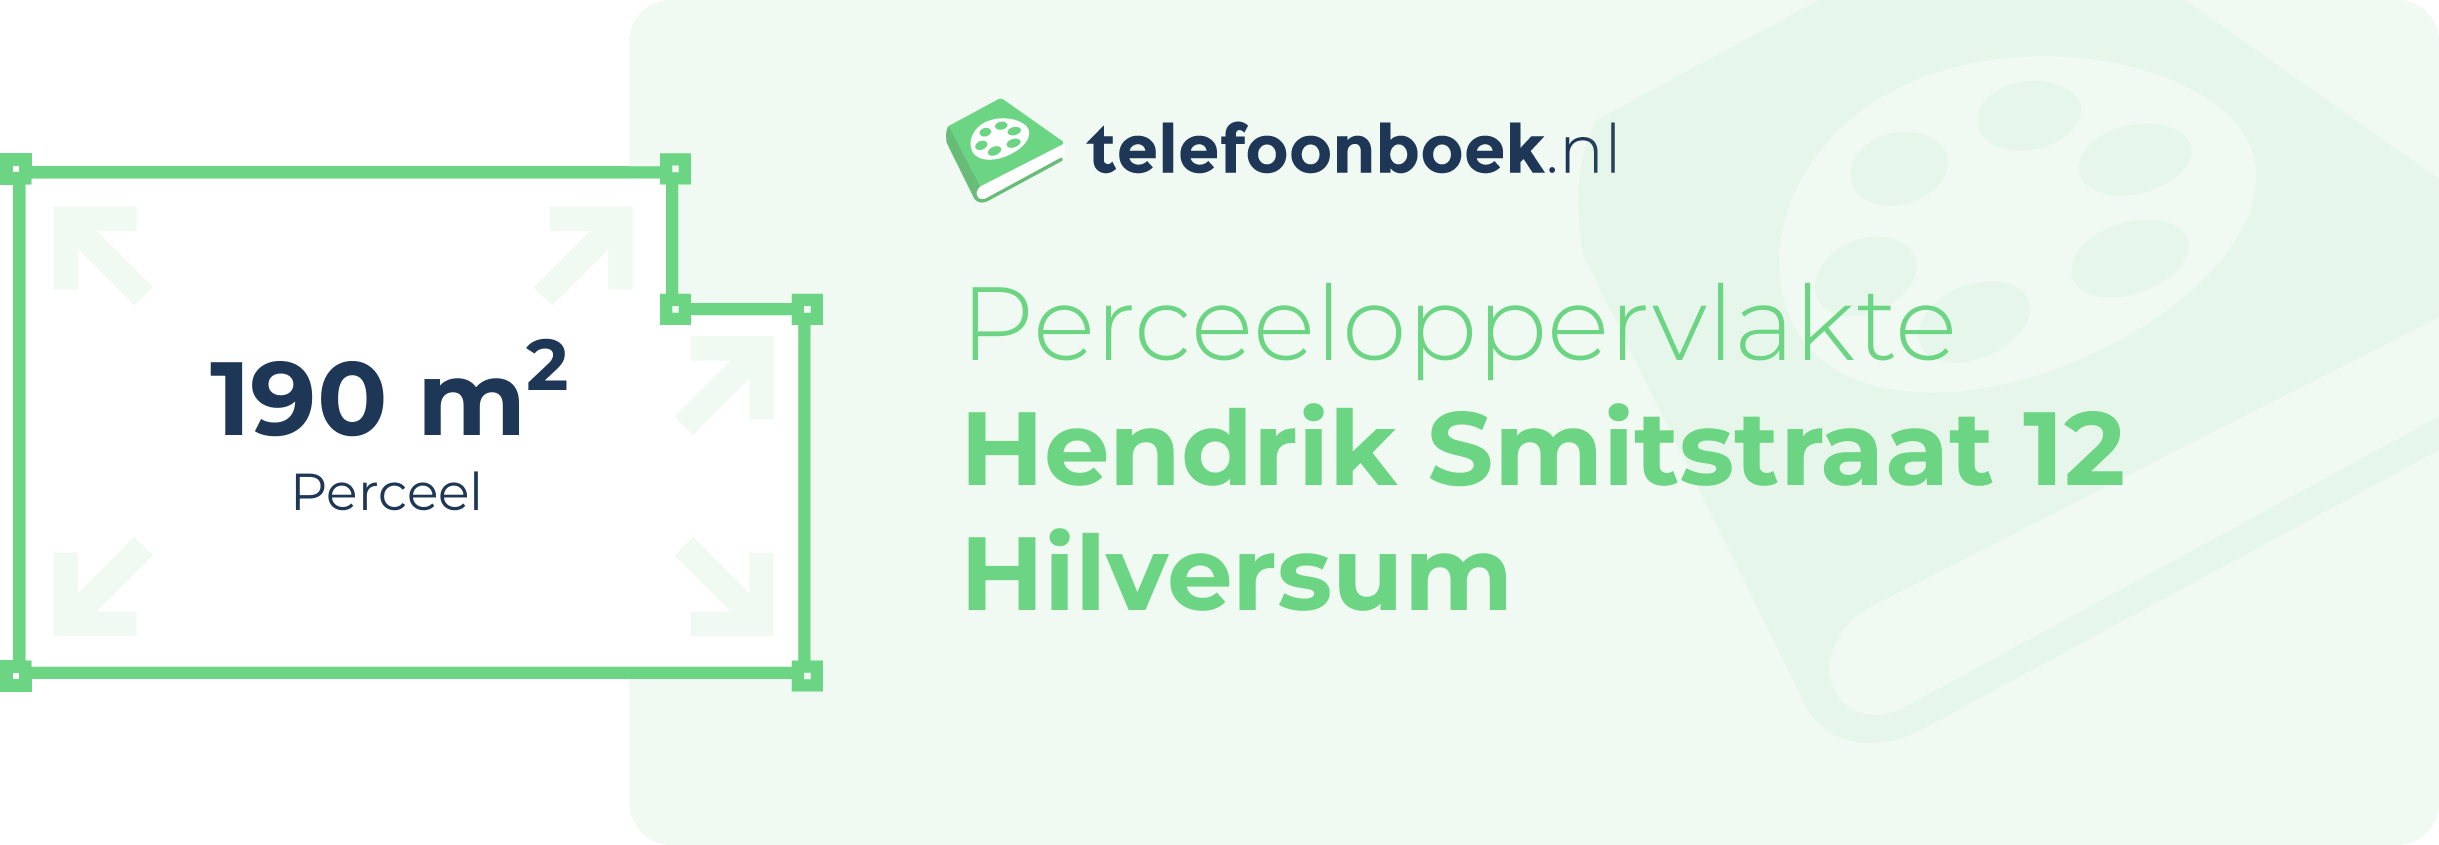 Perceeloppervlakte Hendrik Smitstraat 12 Hilversum